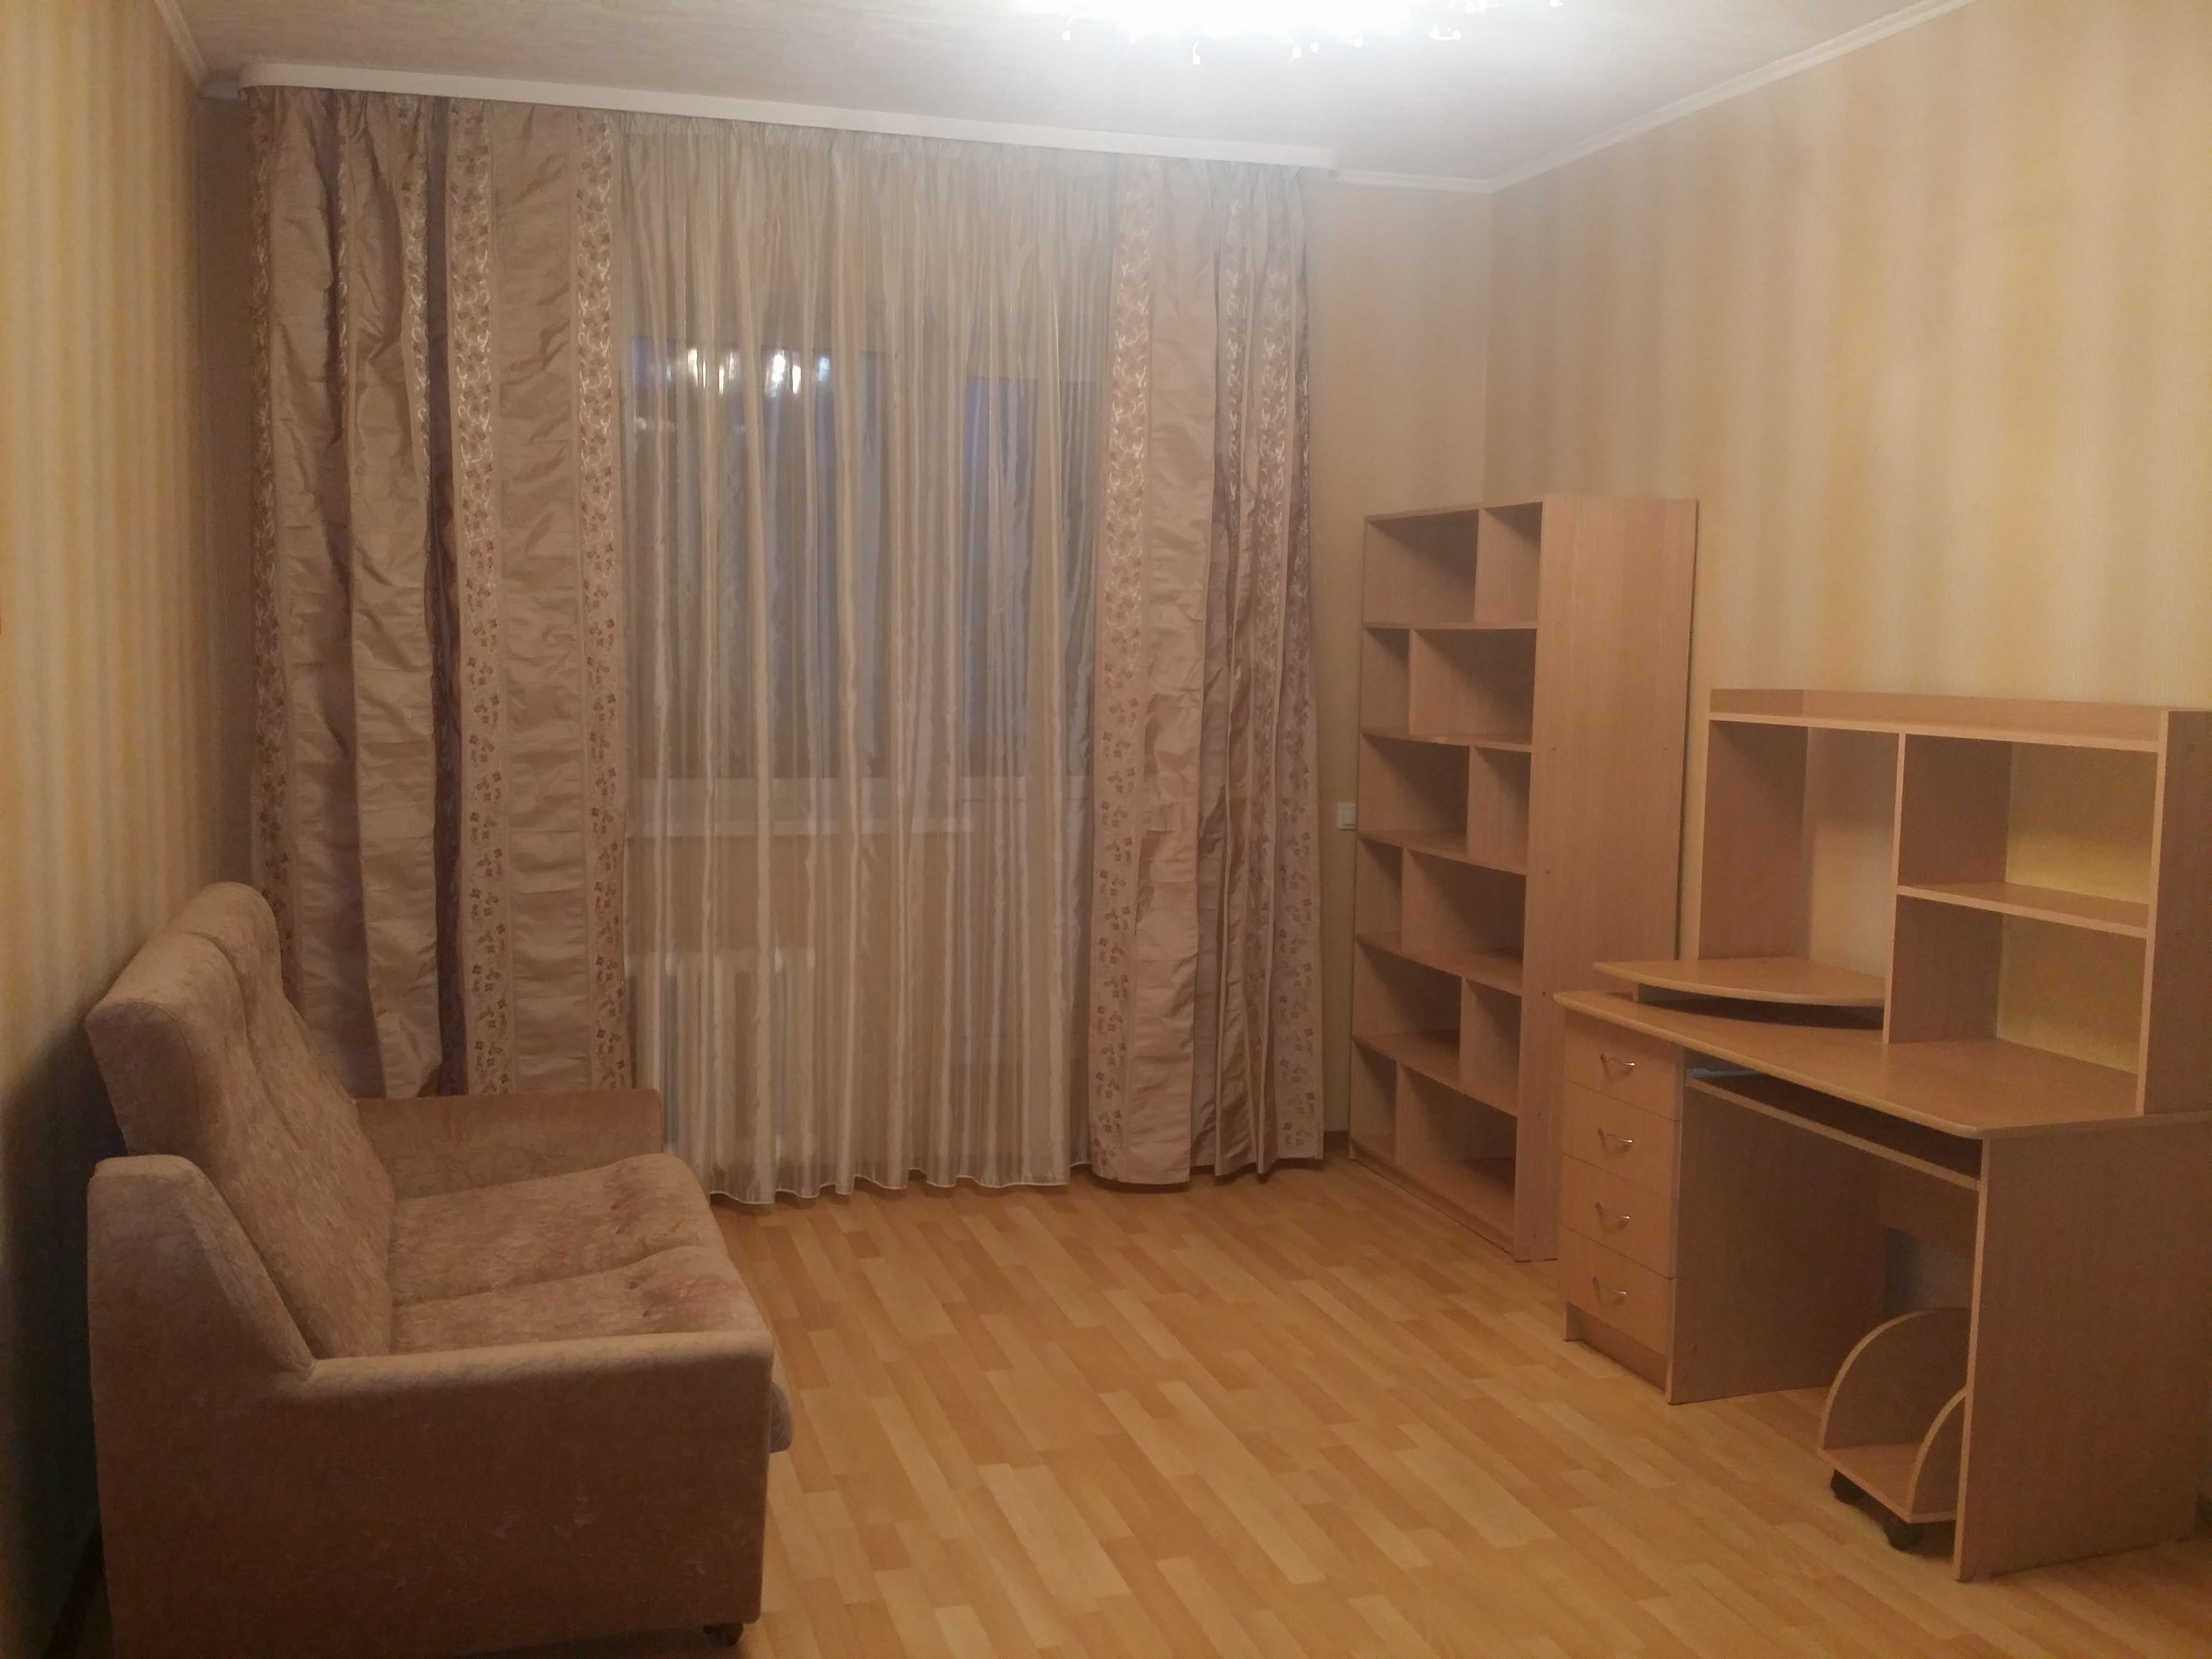 Однокомнатные квартиры в Железнодорожном районе города Ульяновска. Купить 1 комнатную в ульяновске недорого